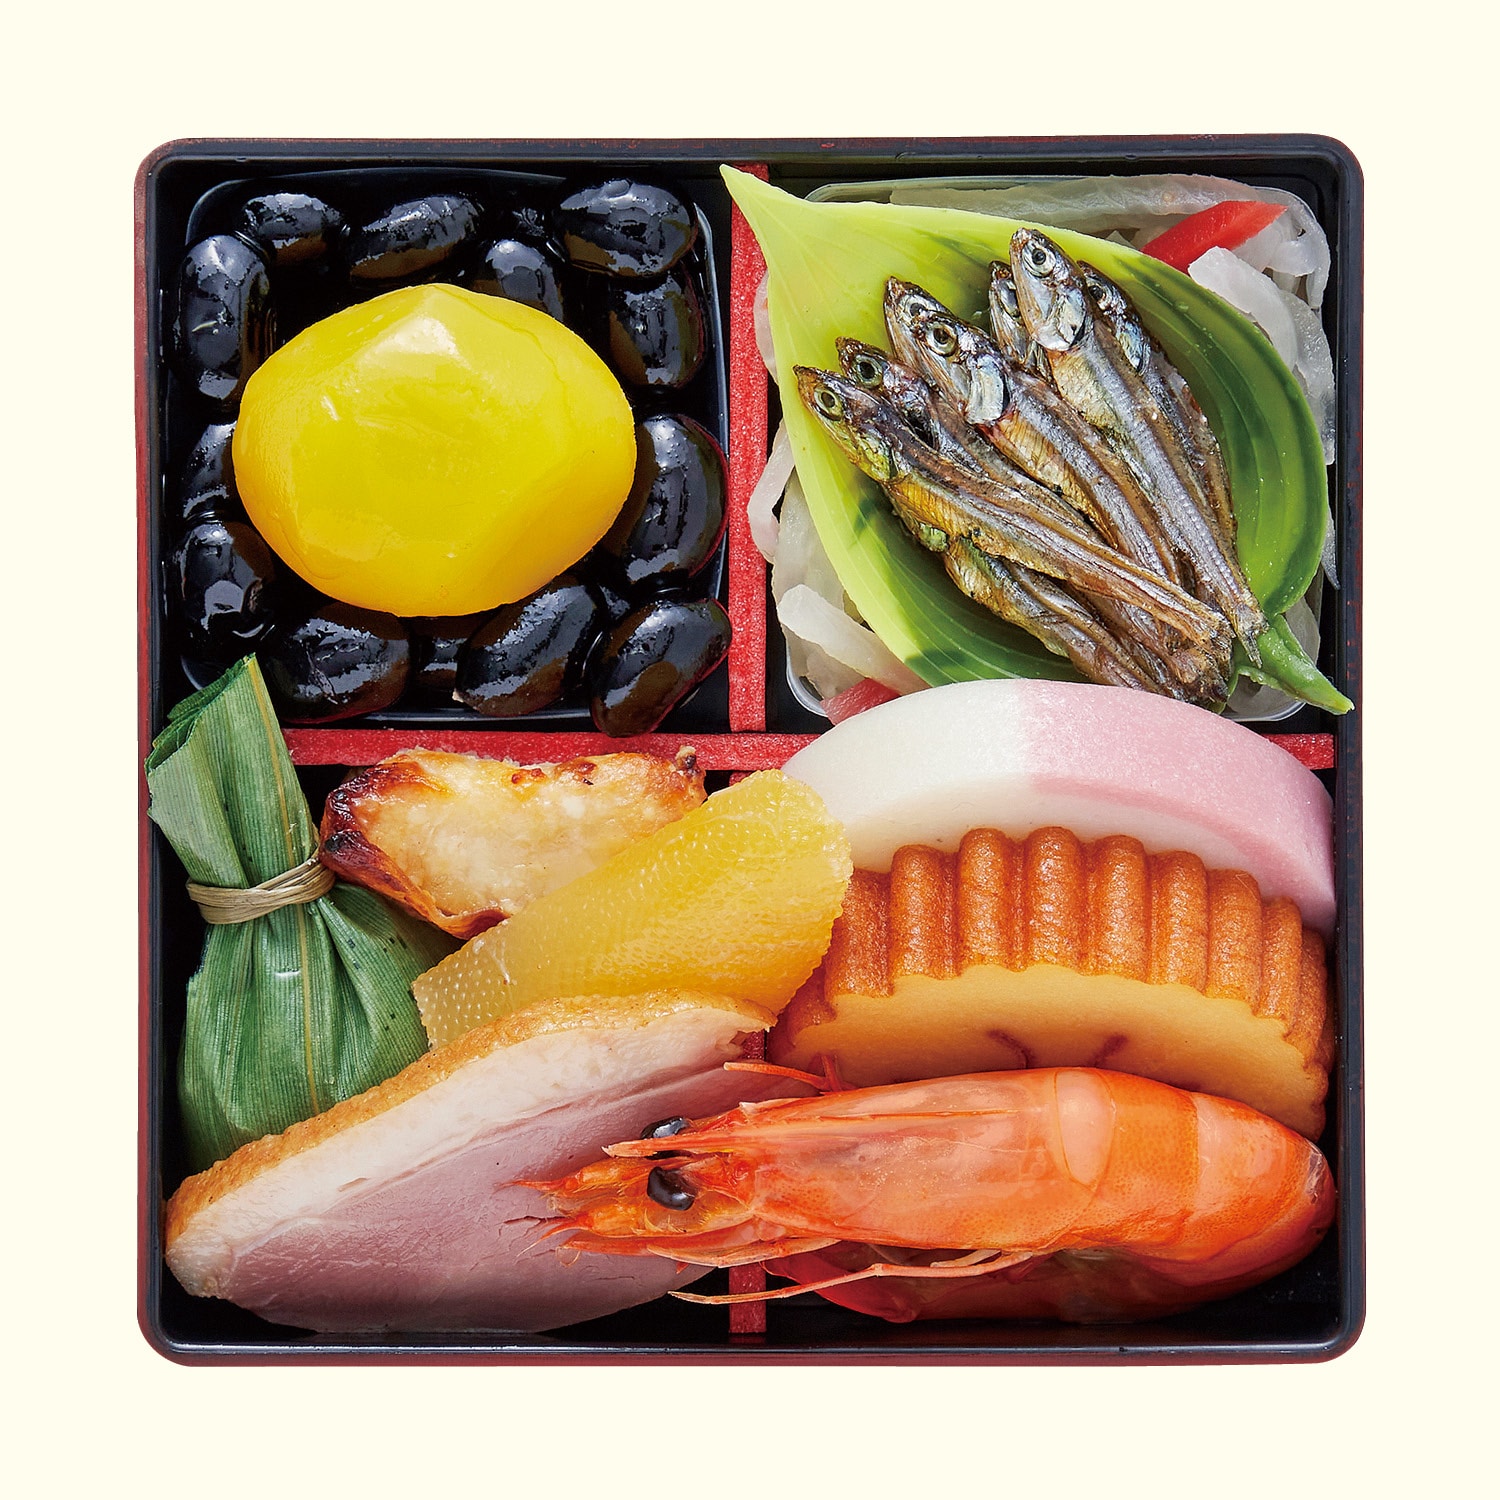  京都〈京菜味のむら〉和風おせち二段二客組 京小箱 